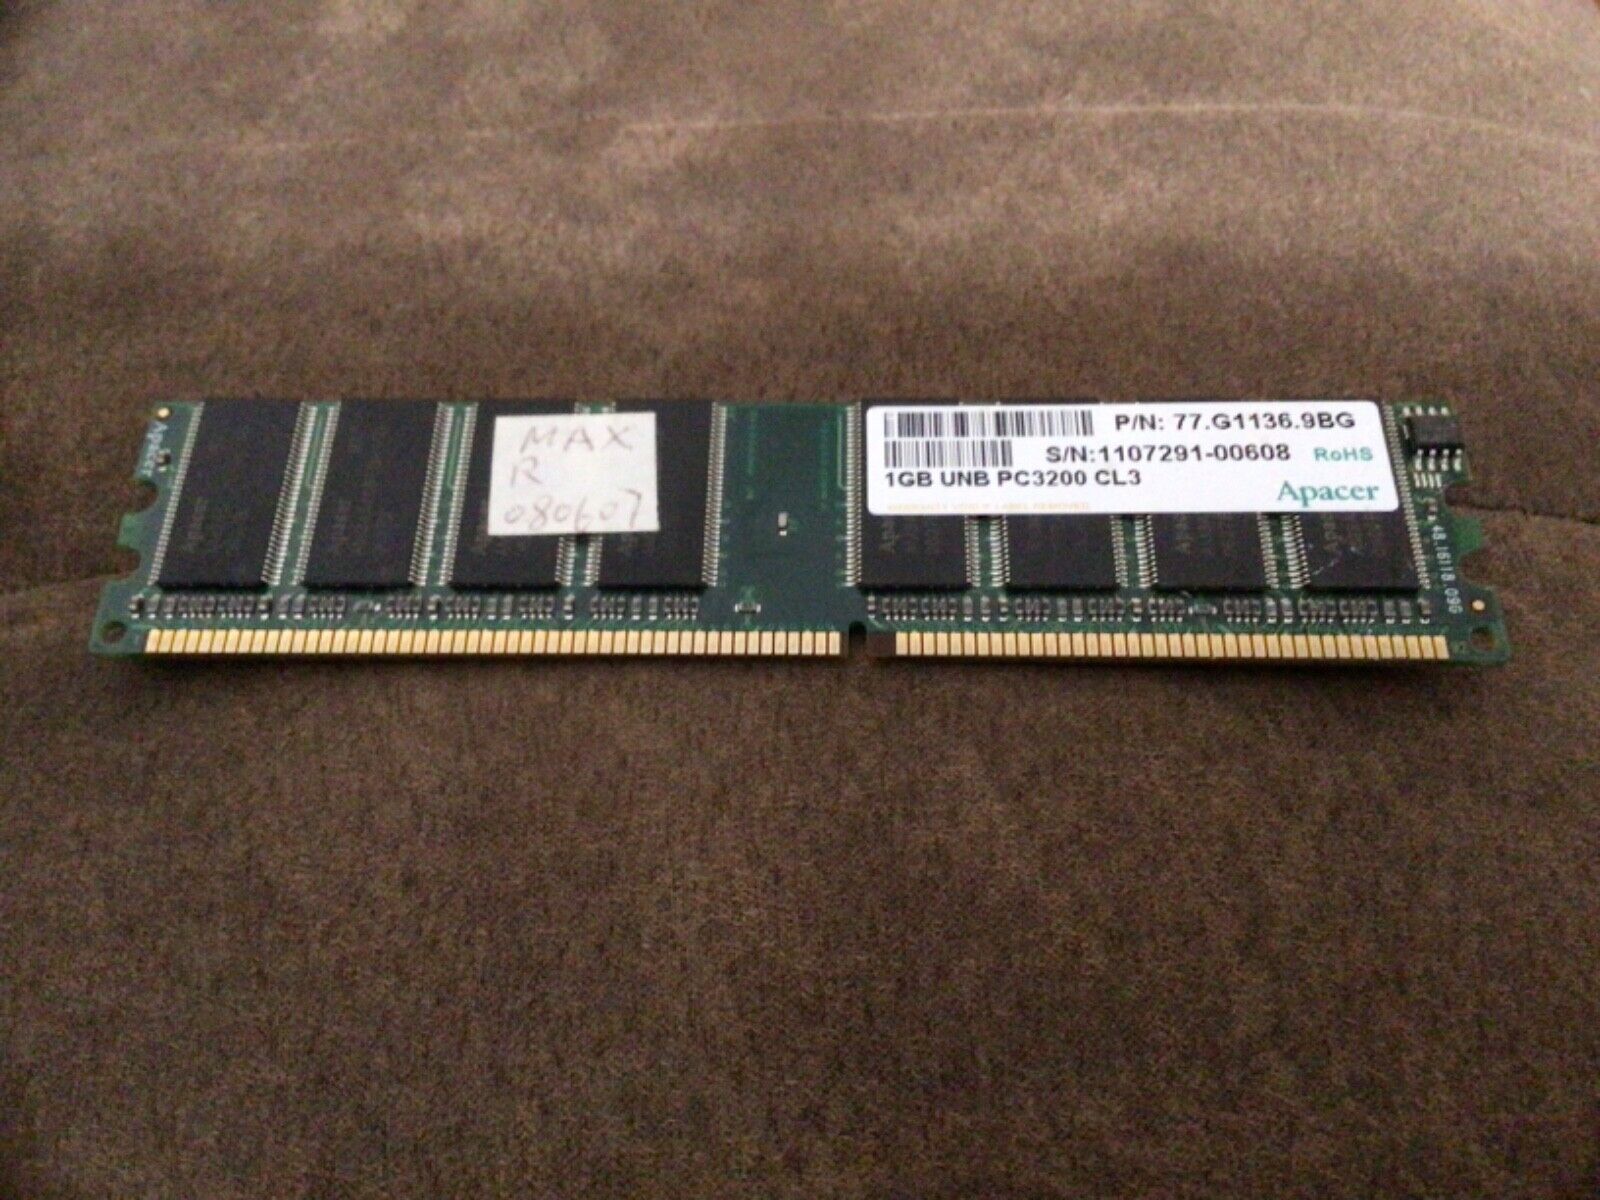 APACER 1GB  PC3200 77.G1136.9BG Memory